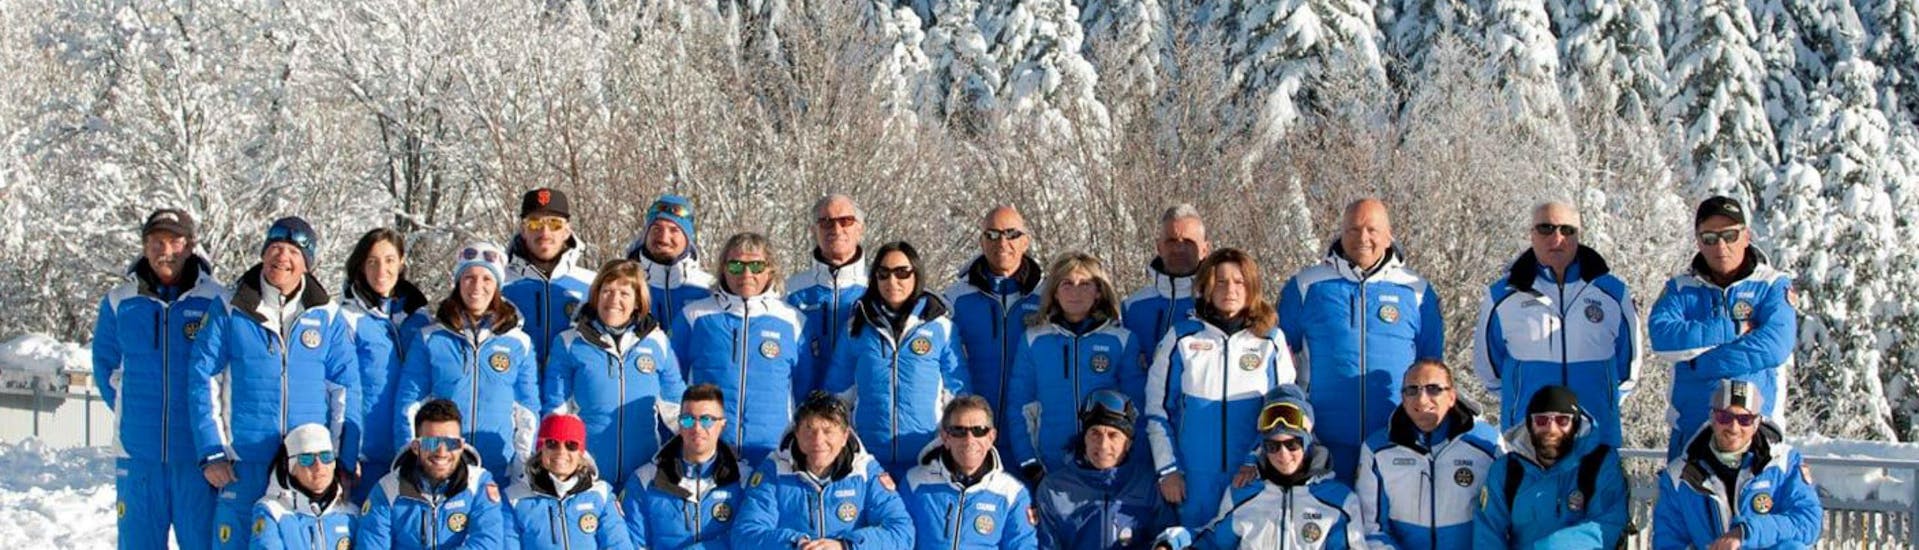 Die Skilehrer der Skischule Scuola di Sci Abetone stehen gesammelt im Schnee, mit freundlichen Lächeln, die jeden dazu einladen, an einem Skikurs mit ihnen teilzunehmen.